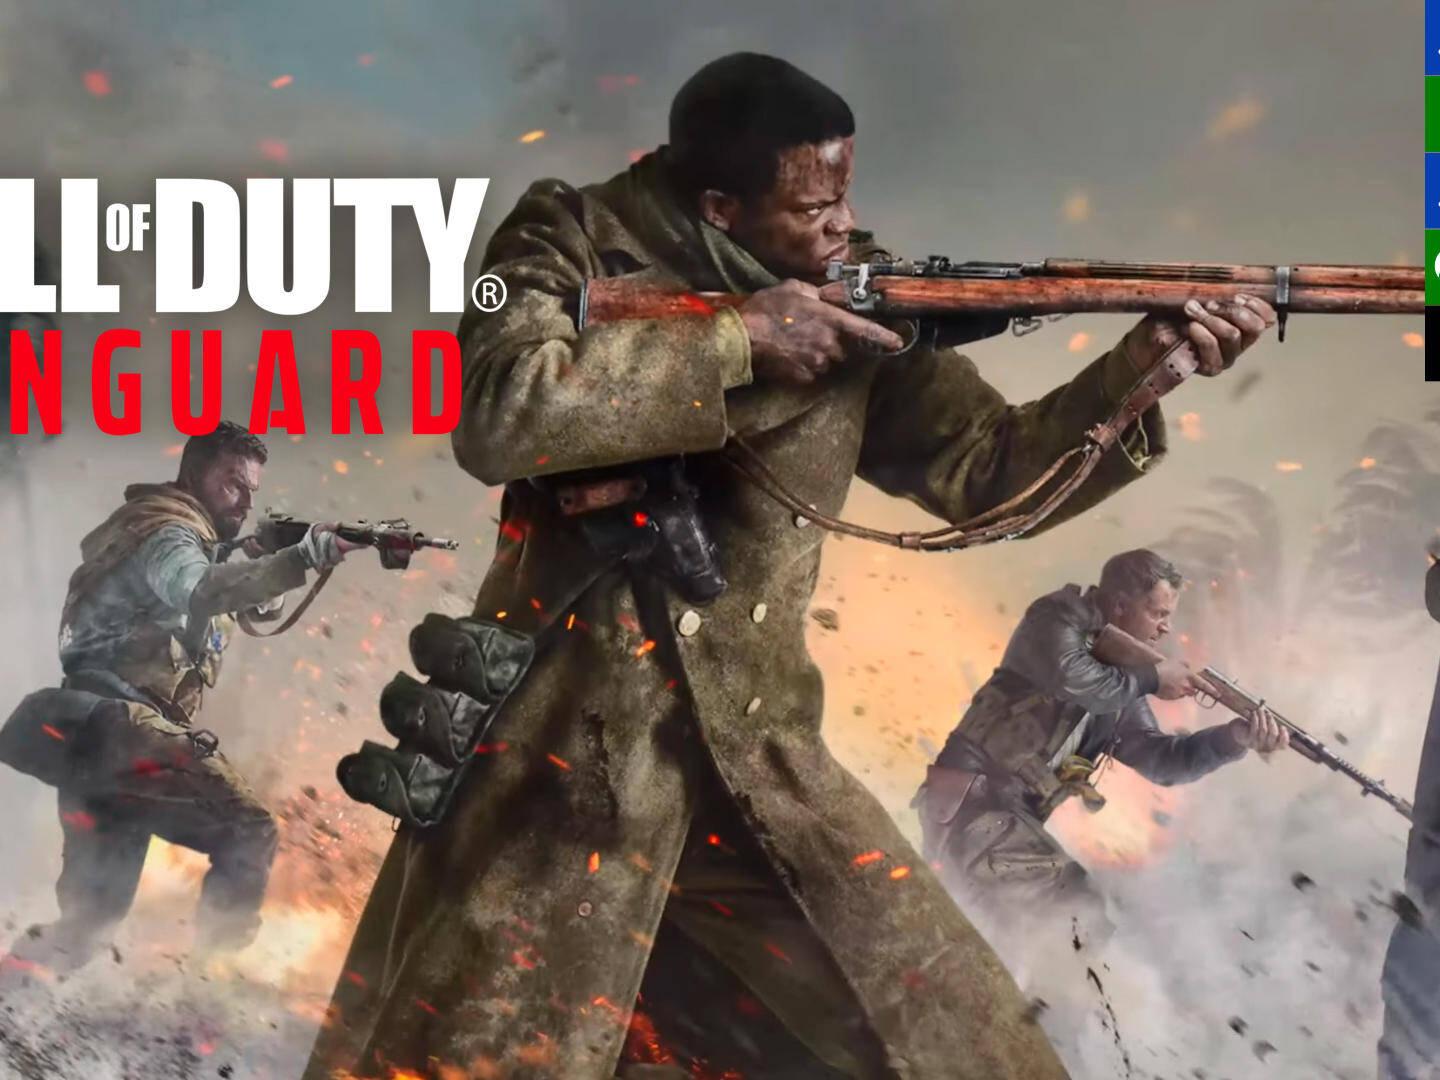 Hasta 8 juegos para descargar gratis este finde en PC y consolas, con  ración cuádruple de shooter bélicos - Call of Duty: Vanguard - 3DJuegos